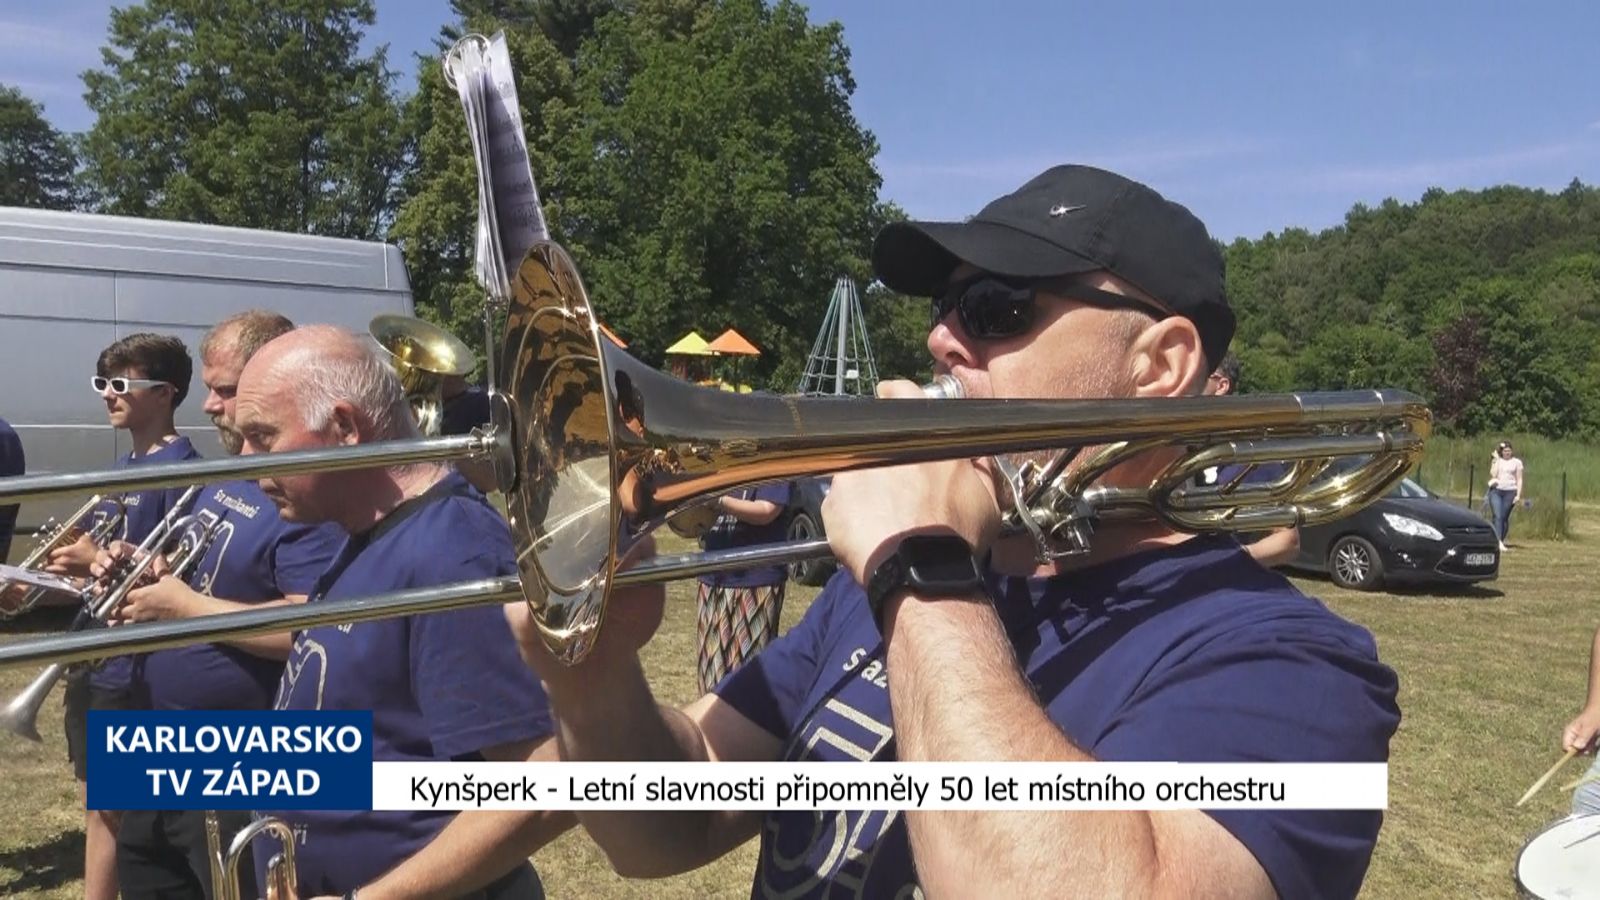 Kynšperk: Letní slavnosti připomněly 50 let místního orchestru (TV Západ)